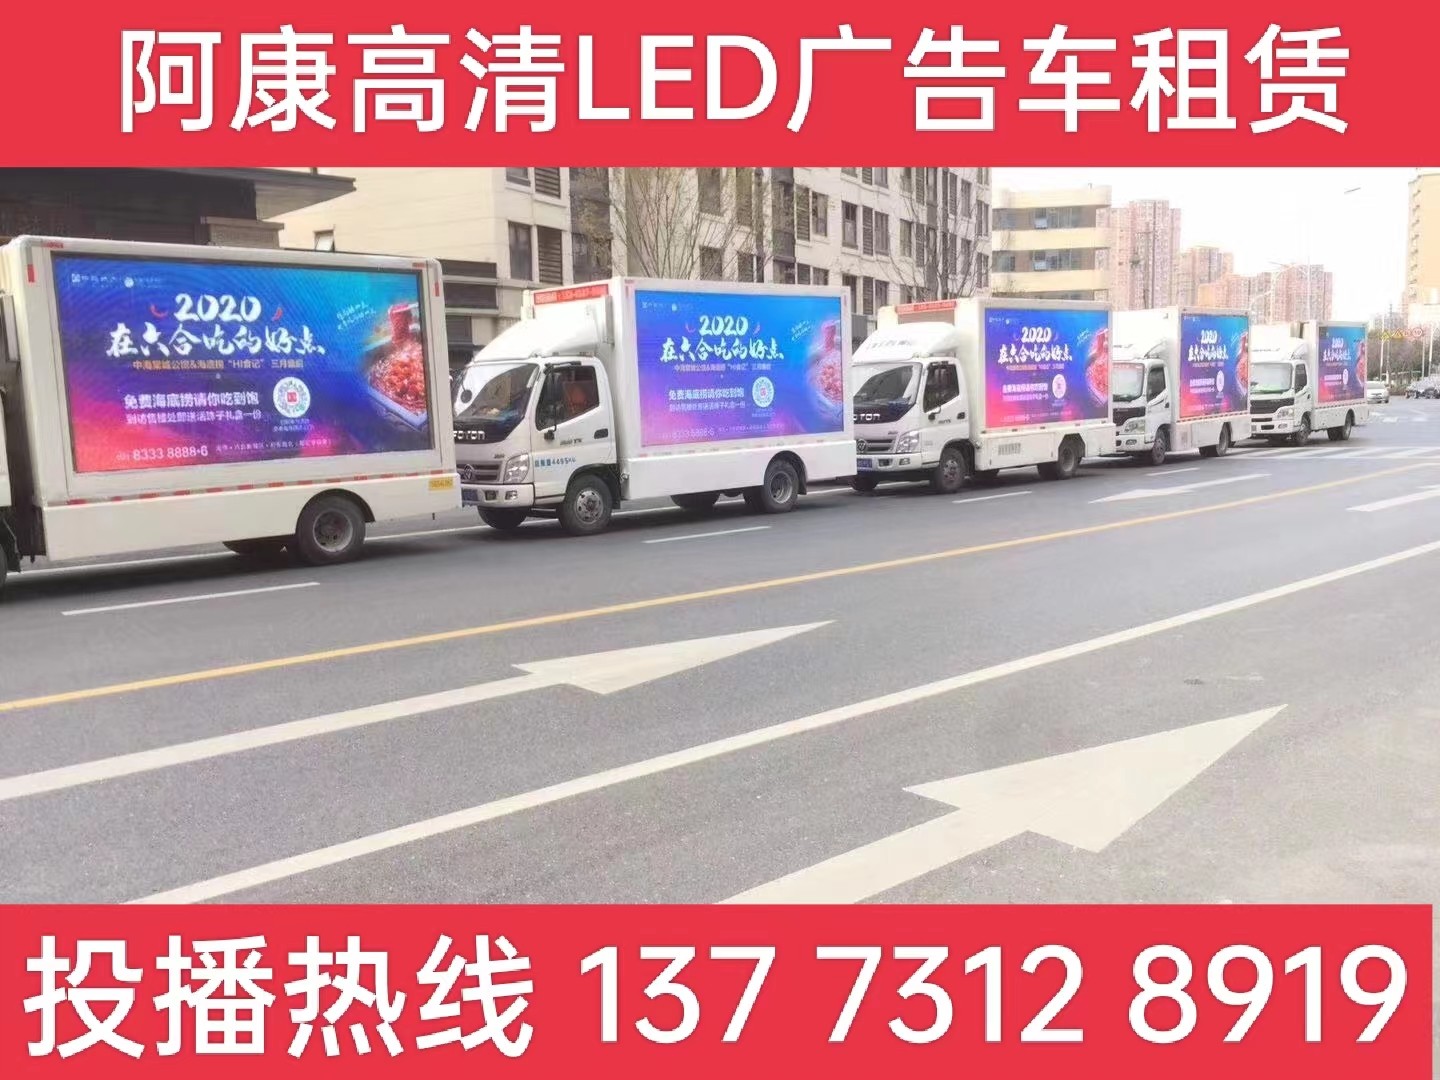 宣城宣传车出租-海底捞LED广告